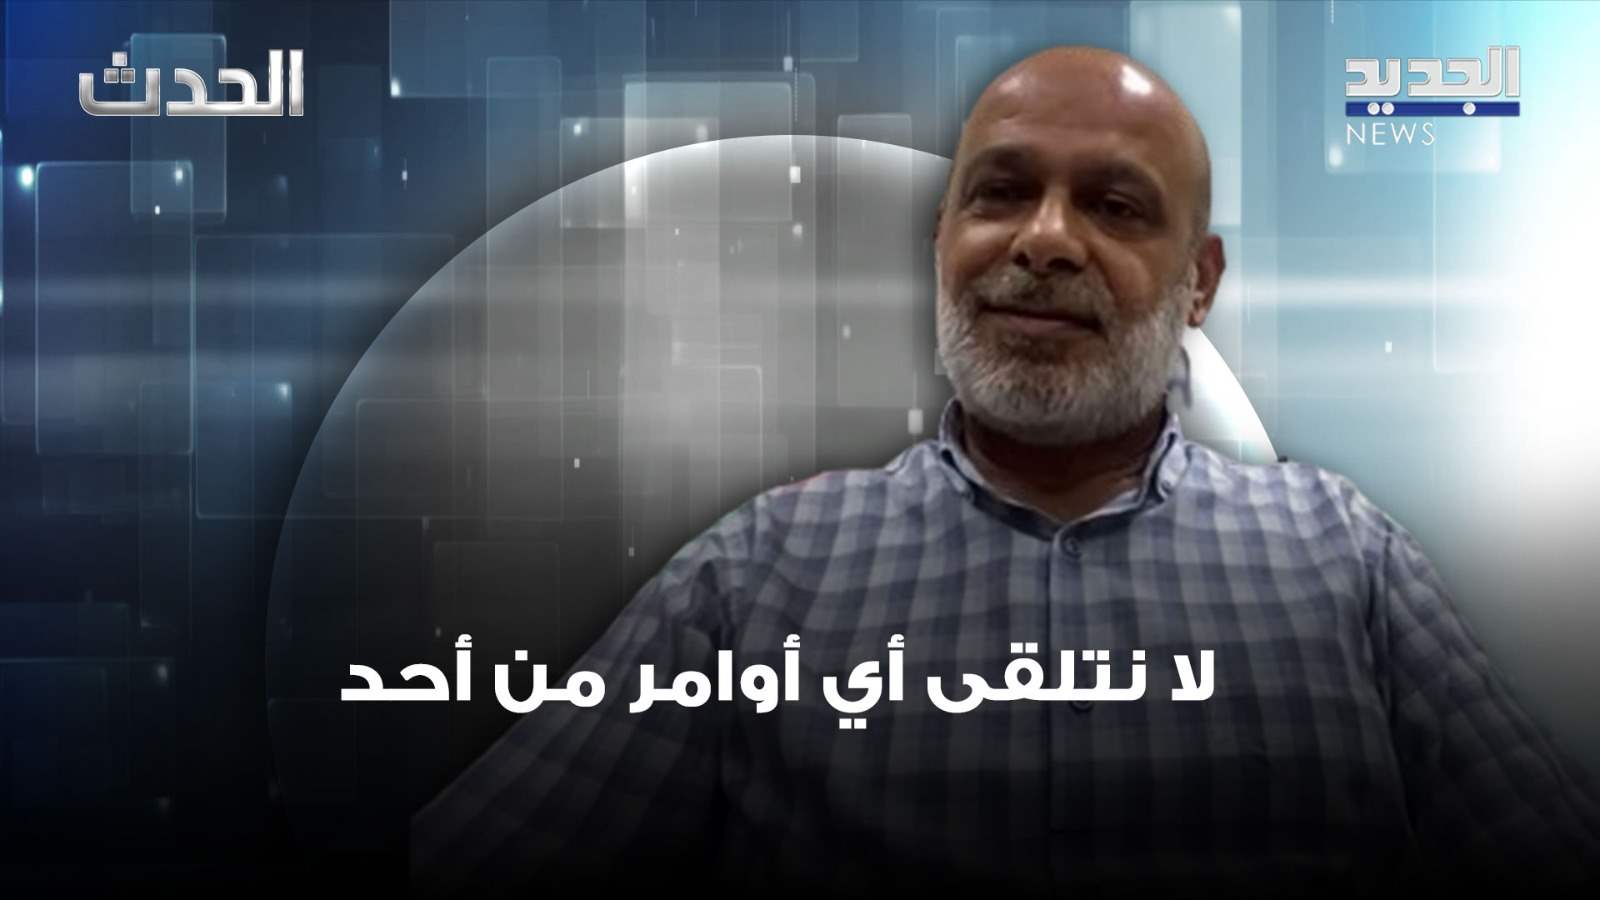 بسام حمود: مقاومة العدو من ثوابتنا السياسية